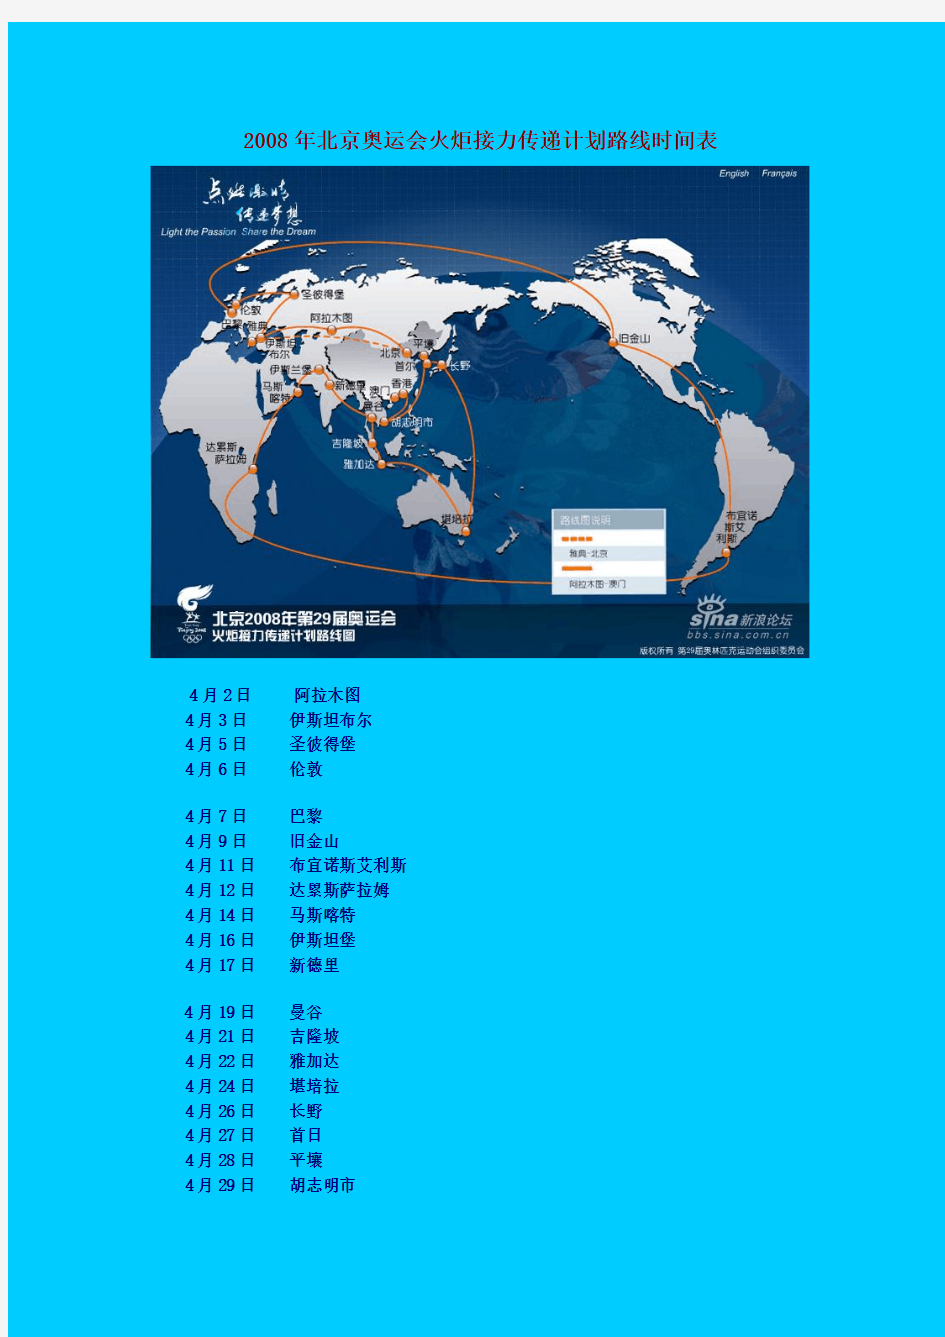 2008年北京奥运会火炬接力传递计划路线时间表